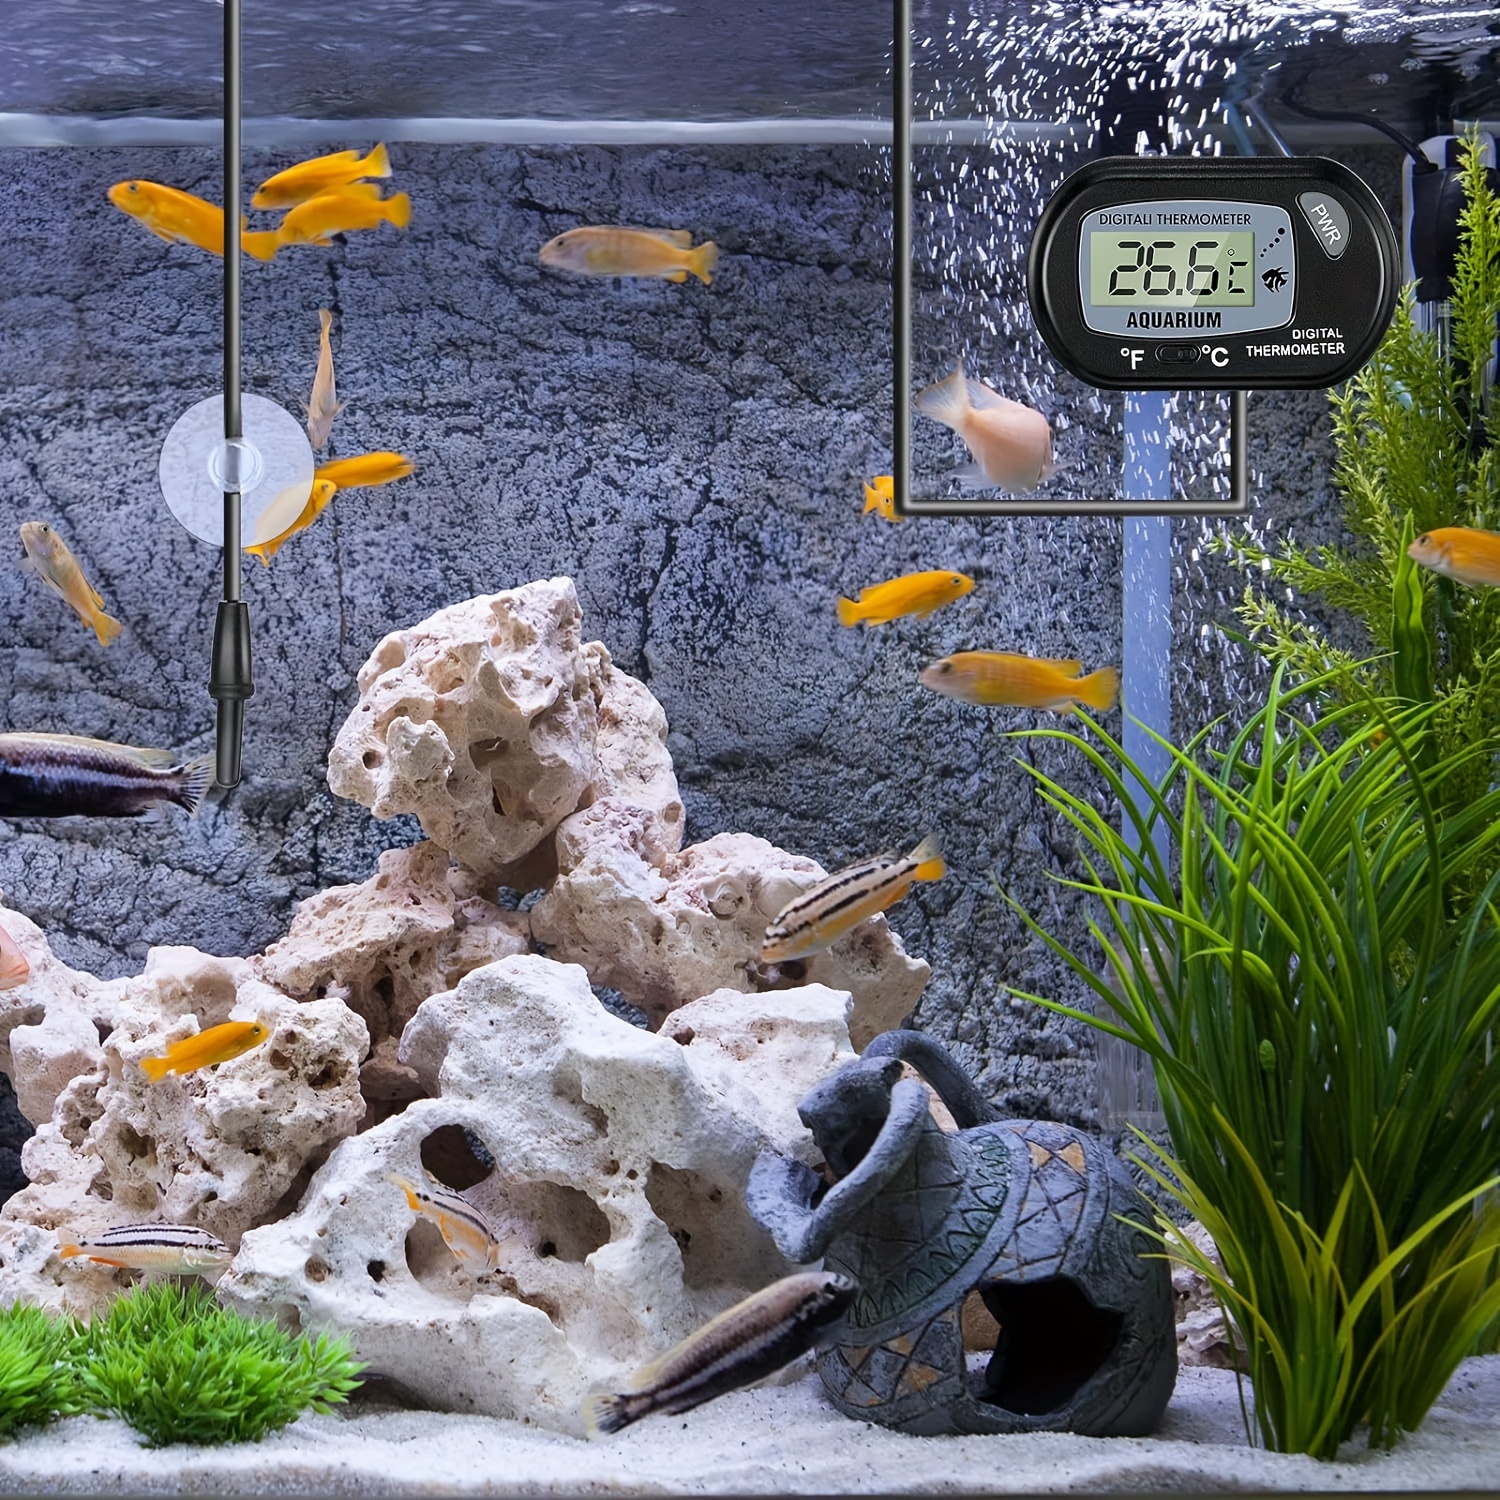 ZACRO 2 Pack Digital Aquarium Thermometer, Fish Tank Thermometer, Water  Thermometer with Large LCD Display,Reptile Thermometer for Fish Tank Water